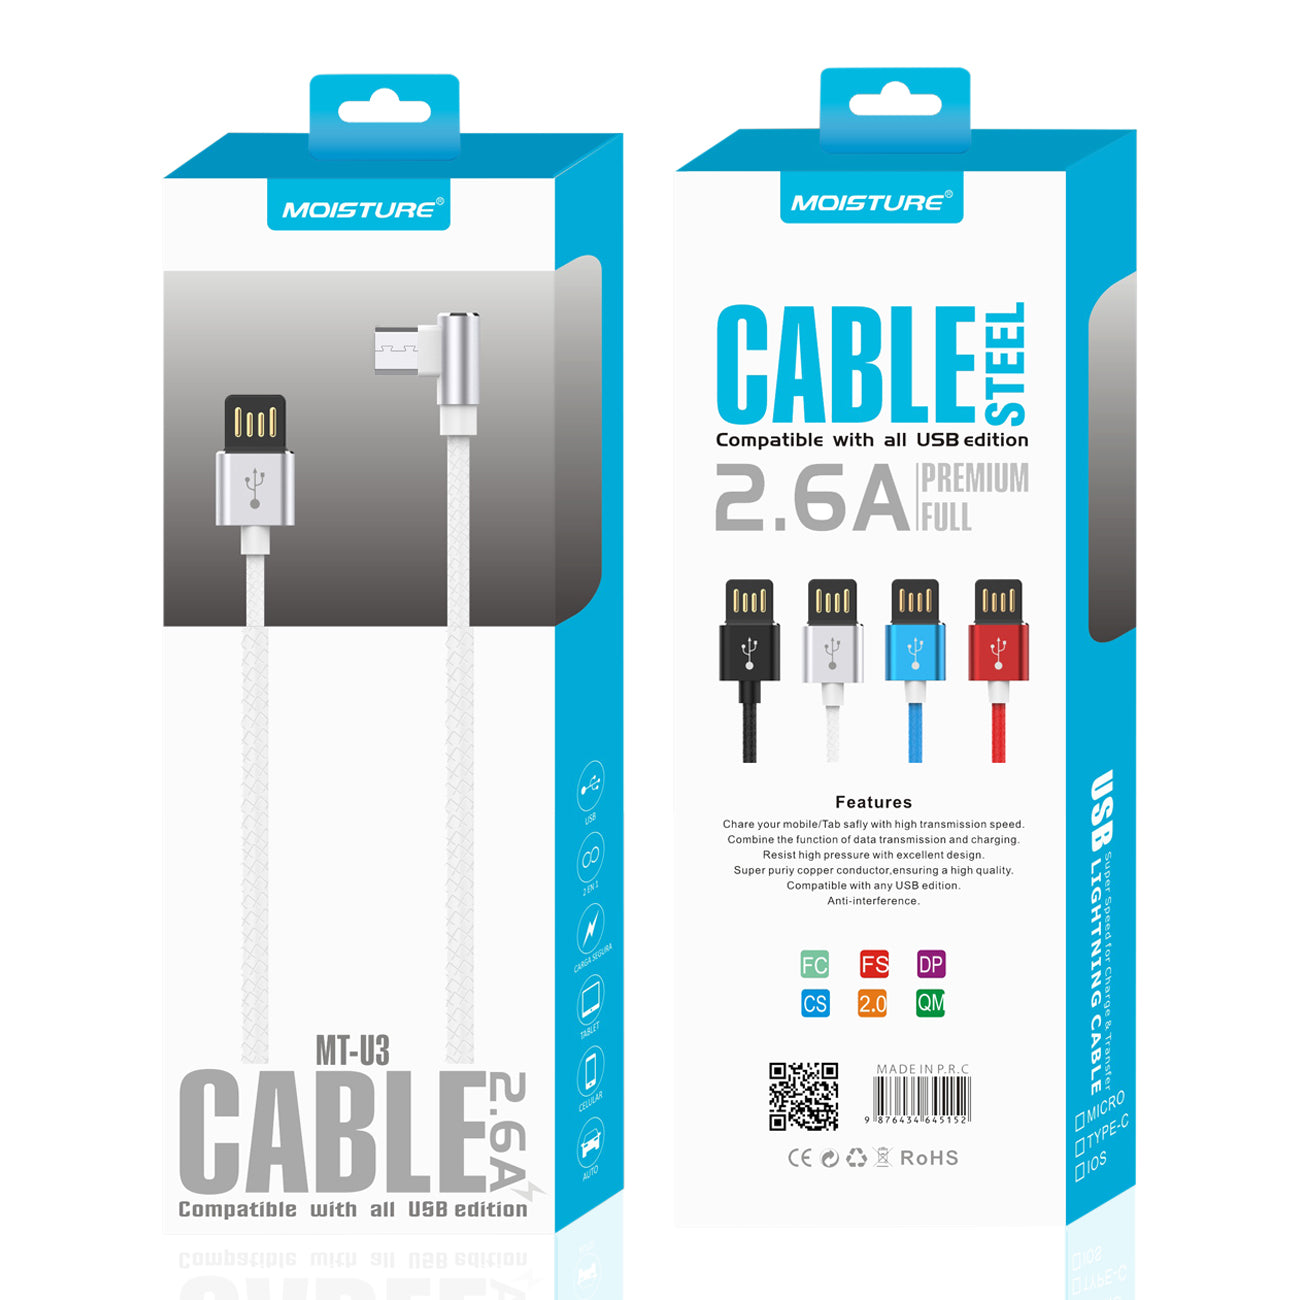 Cable Micro USB Premium Full Steel Moisture 2.6A Silver Color